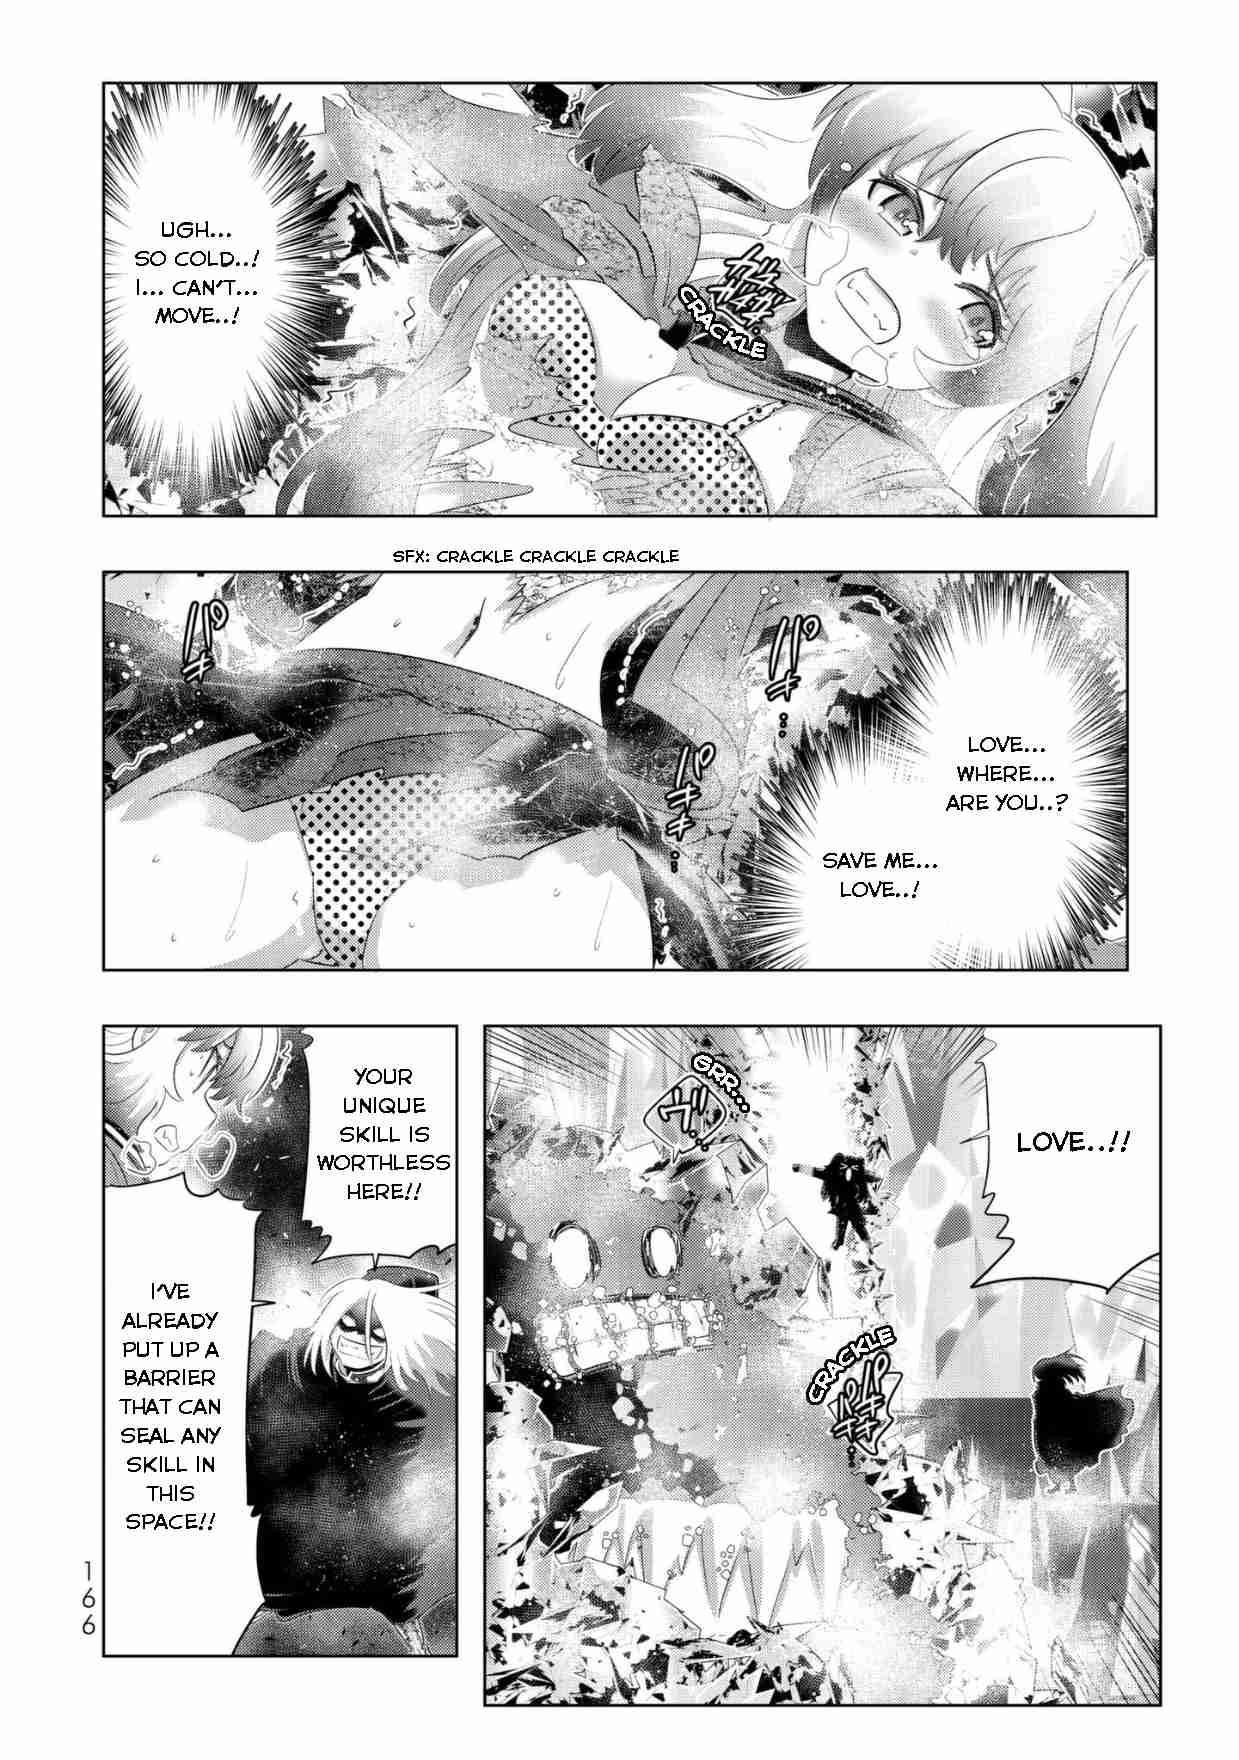 Isekai Shihai no Skill Taker: Zero kara Hajimeru Dorei Harem Vol. 5 Ch. 40